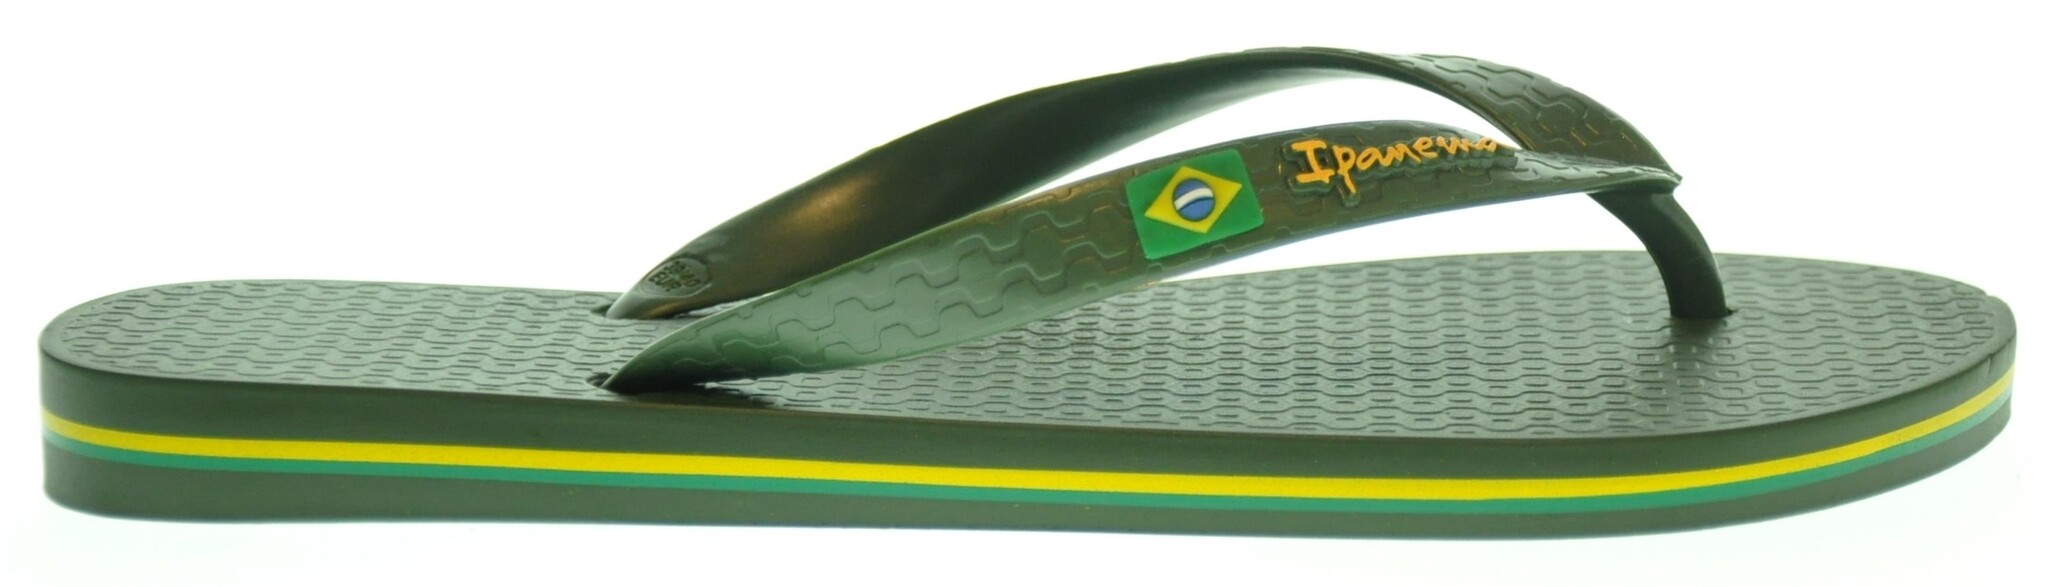 Ipanema Ipanema Brasil Slipper (39 t/m 48) 241IPA01